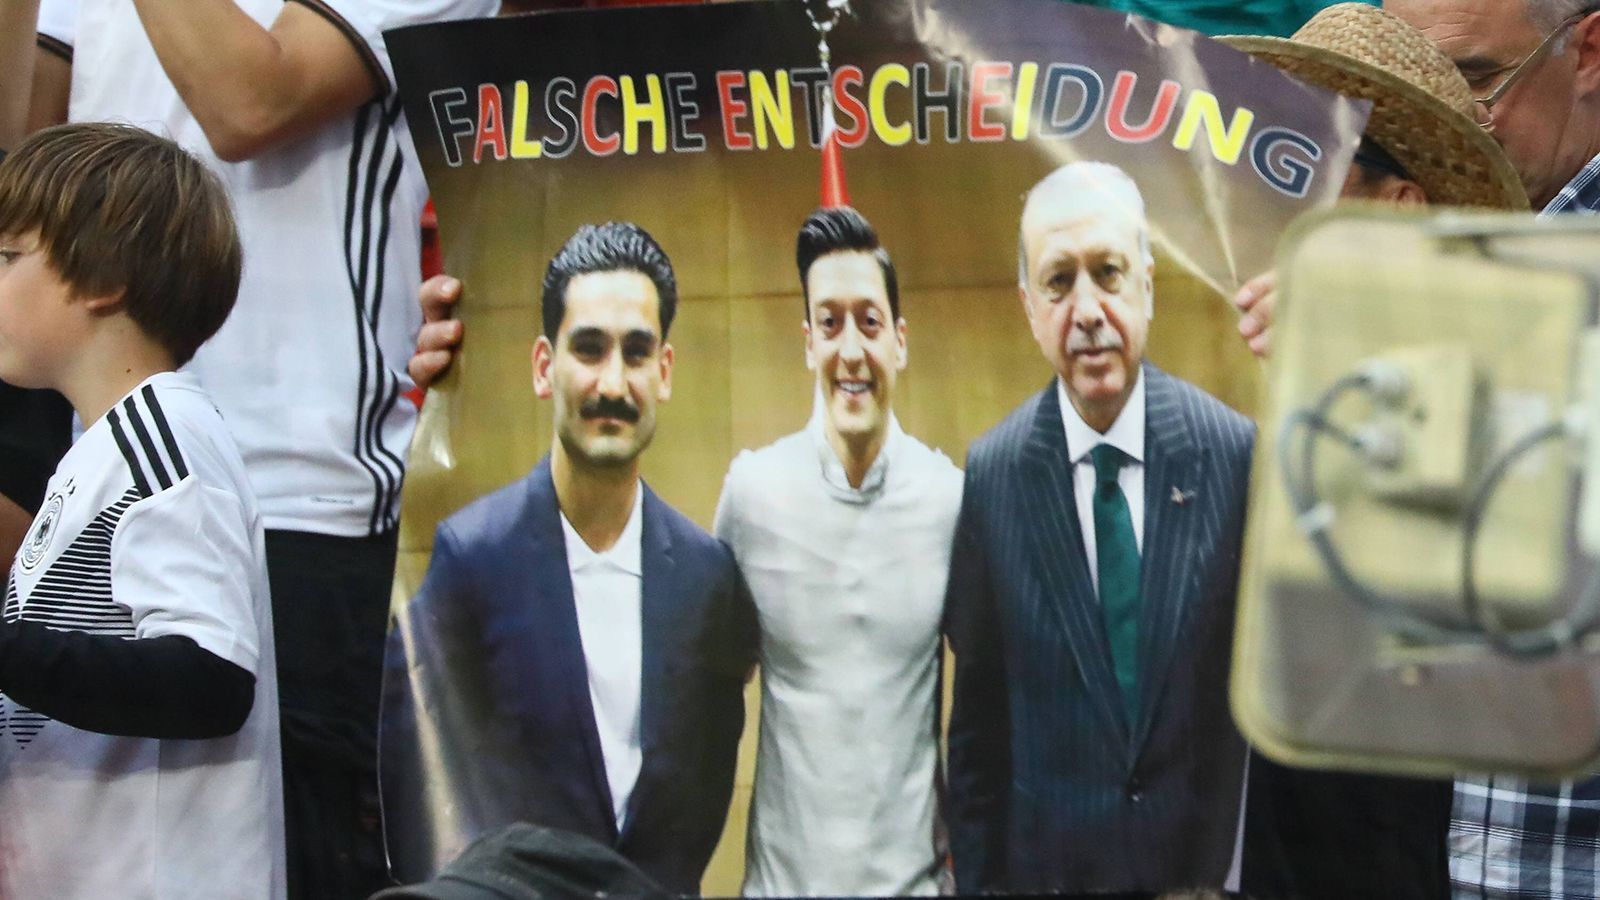 
                <strong>Mesut Özil, Ilkay Gündogan und das Foto mit Recep Tayyip Erdogan</strong><br>
                Kurz vor der WM in Russland sorgten Mesut Özil und Ilkay Gündogan dann für große Diskussionen, weil sie sich mit dem türkischen Präsidenten und Despoten Recep Tayyip Erdogan trafen. Gündogan übergab Erdogan dabei ein Trikot von Manchester City. Darauf stand: "Mit Respekt für meinen Präsidenten." Beide Profis distanzierten sich in der Folge nur halbherzig von Erdogan, wurden dafür weiter kritisiert. Deutsche Fans forderten sogar, dass Özil und Gündogan nicht für das Turnier nominiert werden dürften. Bundestrainer Joachim Löw kam diesen Forderungen nicht nach. Nach der WM wurde auch die Handhabe des DFB stark kritisiert. Für viele Fans ist das Foto "der Anfang vom Untergang" der deutschen Nationalmannschaft.
              